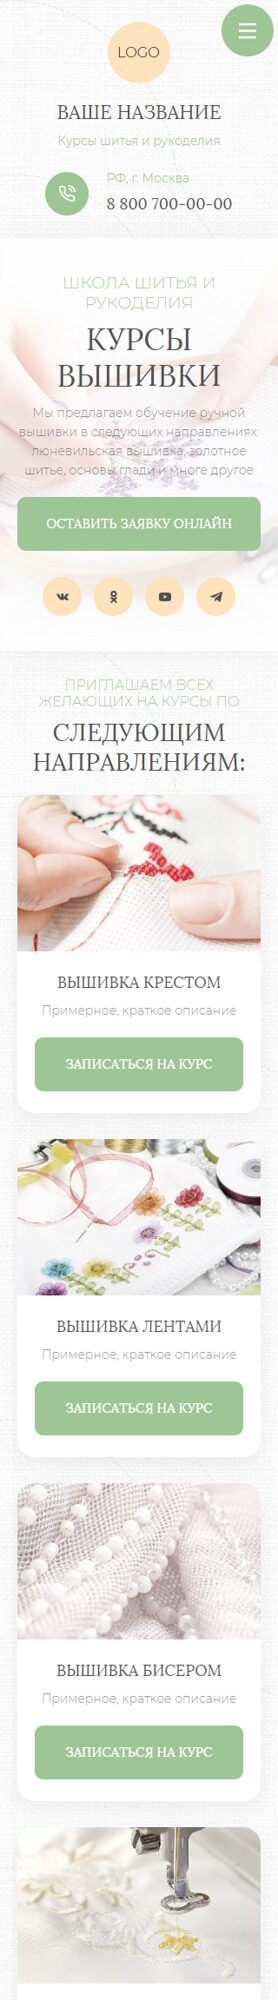 Готовый Сайт-Бизнес № 5021800 - Курсы шитья и рукоделия (Мобильная версия)